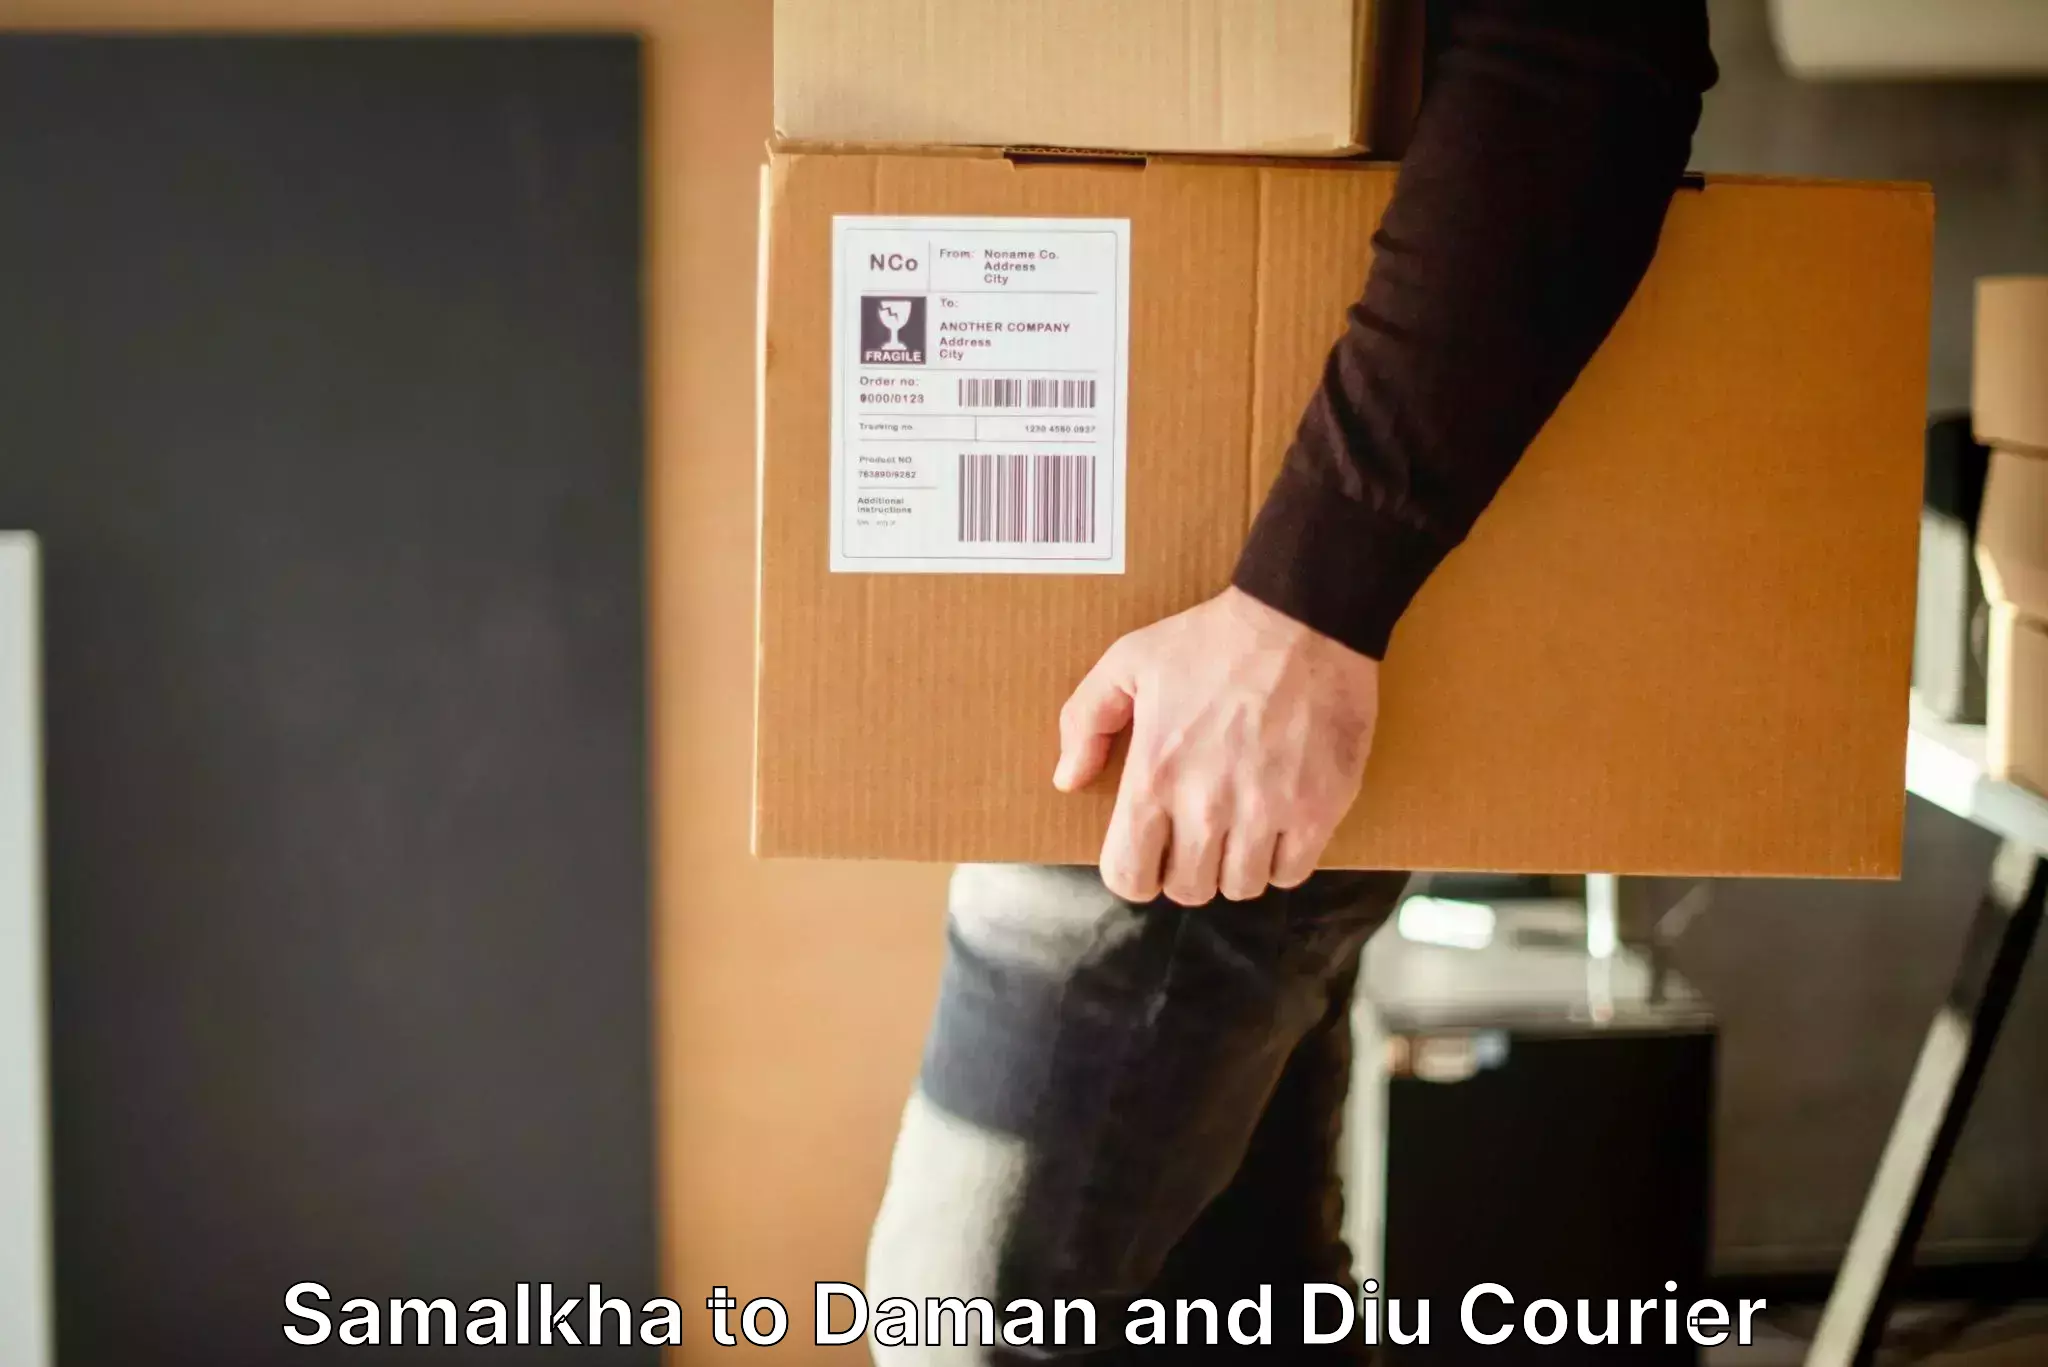 Baggage shipping service Samalkha to Daman and Diu